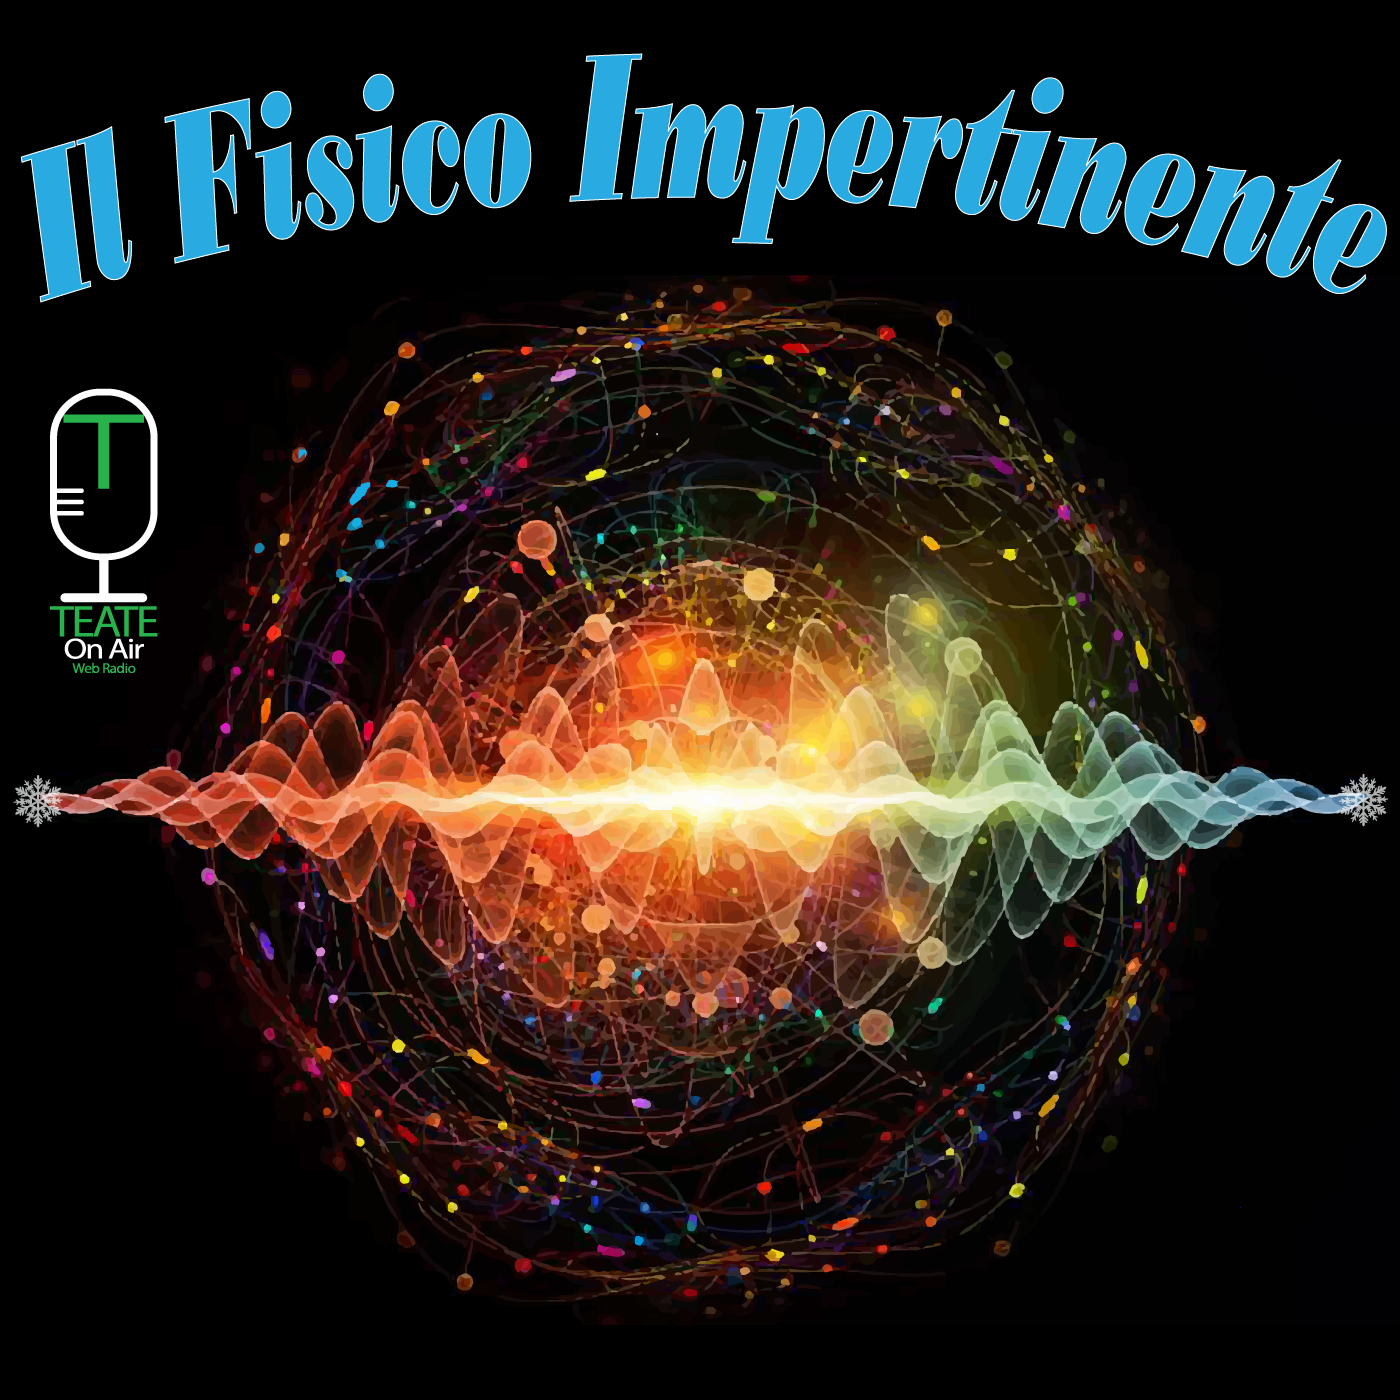 Copertina di "Il Fisico Impertinente" + Logo ToA